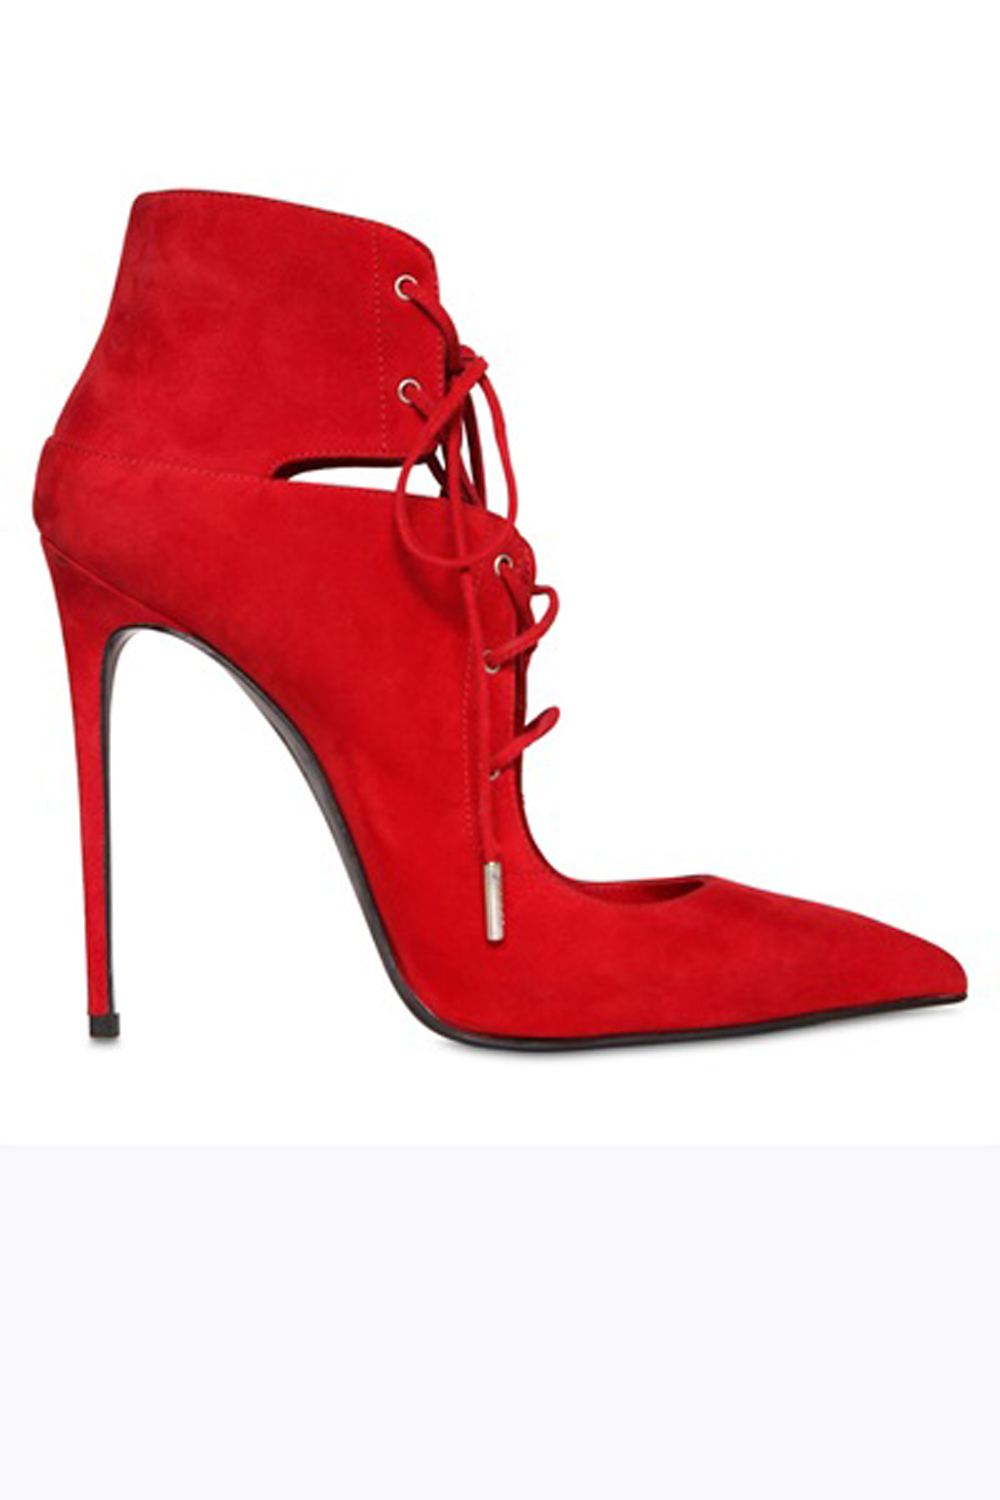 Luisaviaroma Shoe Trends | Marie Claire UK